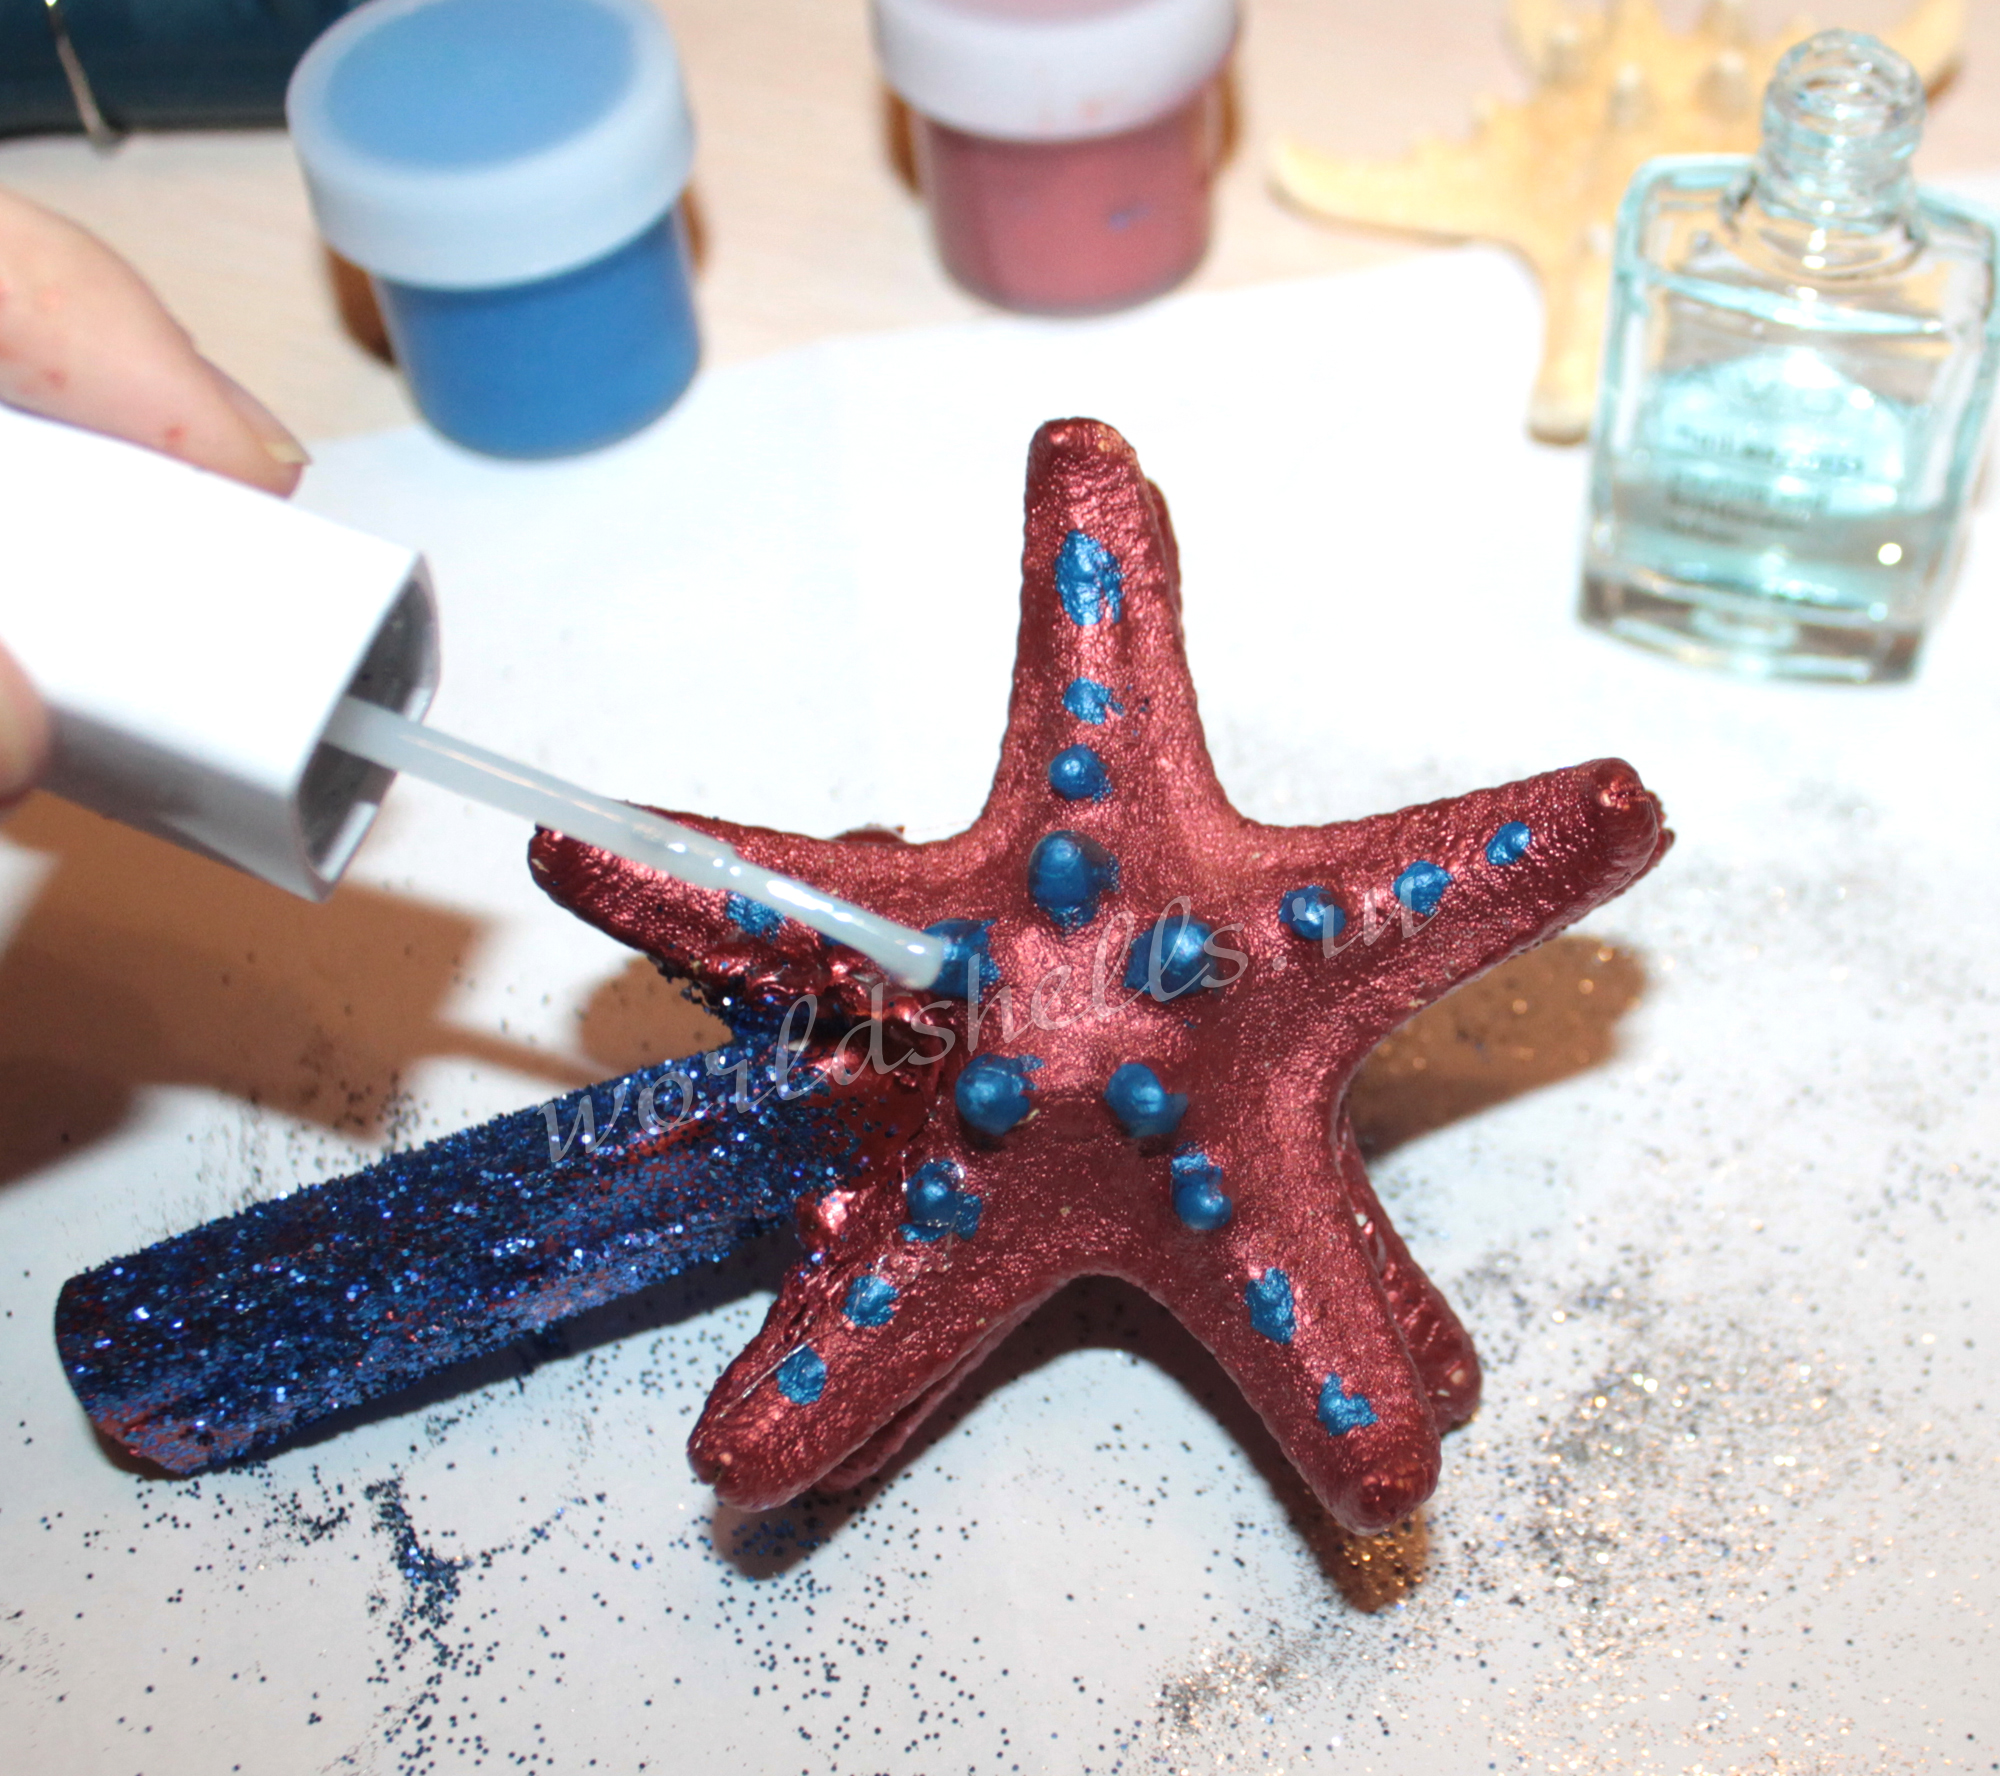 Головоломка: почему у морской звезды пропали туловище и конечности